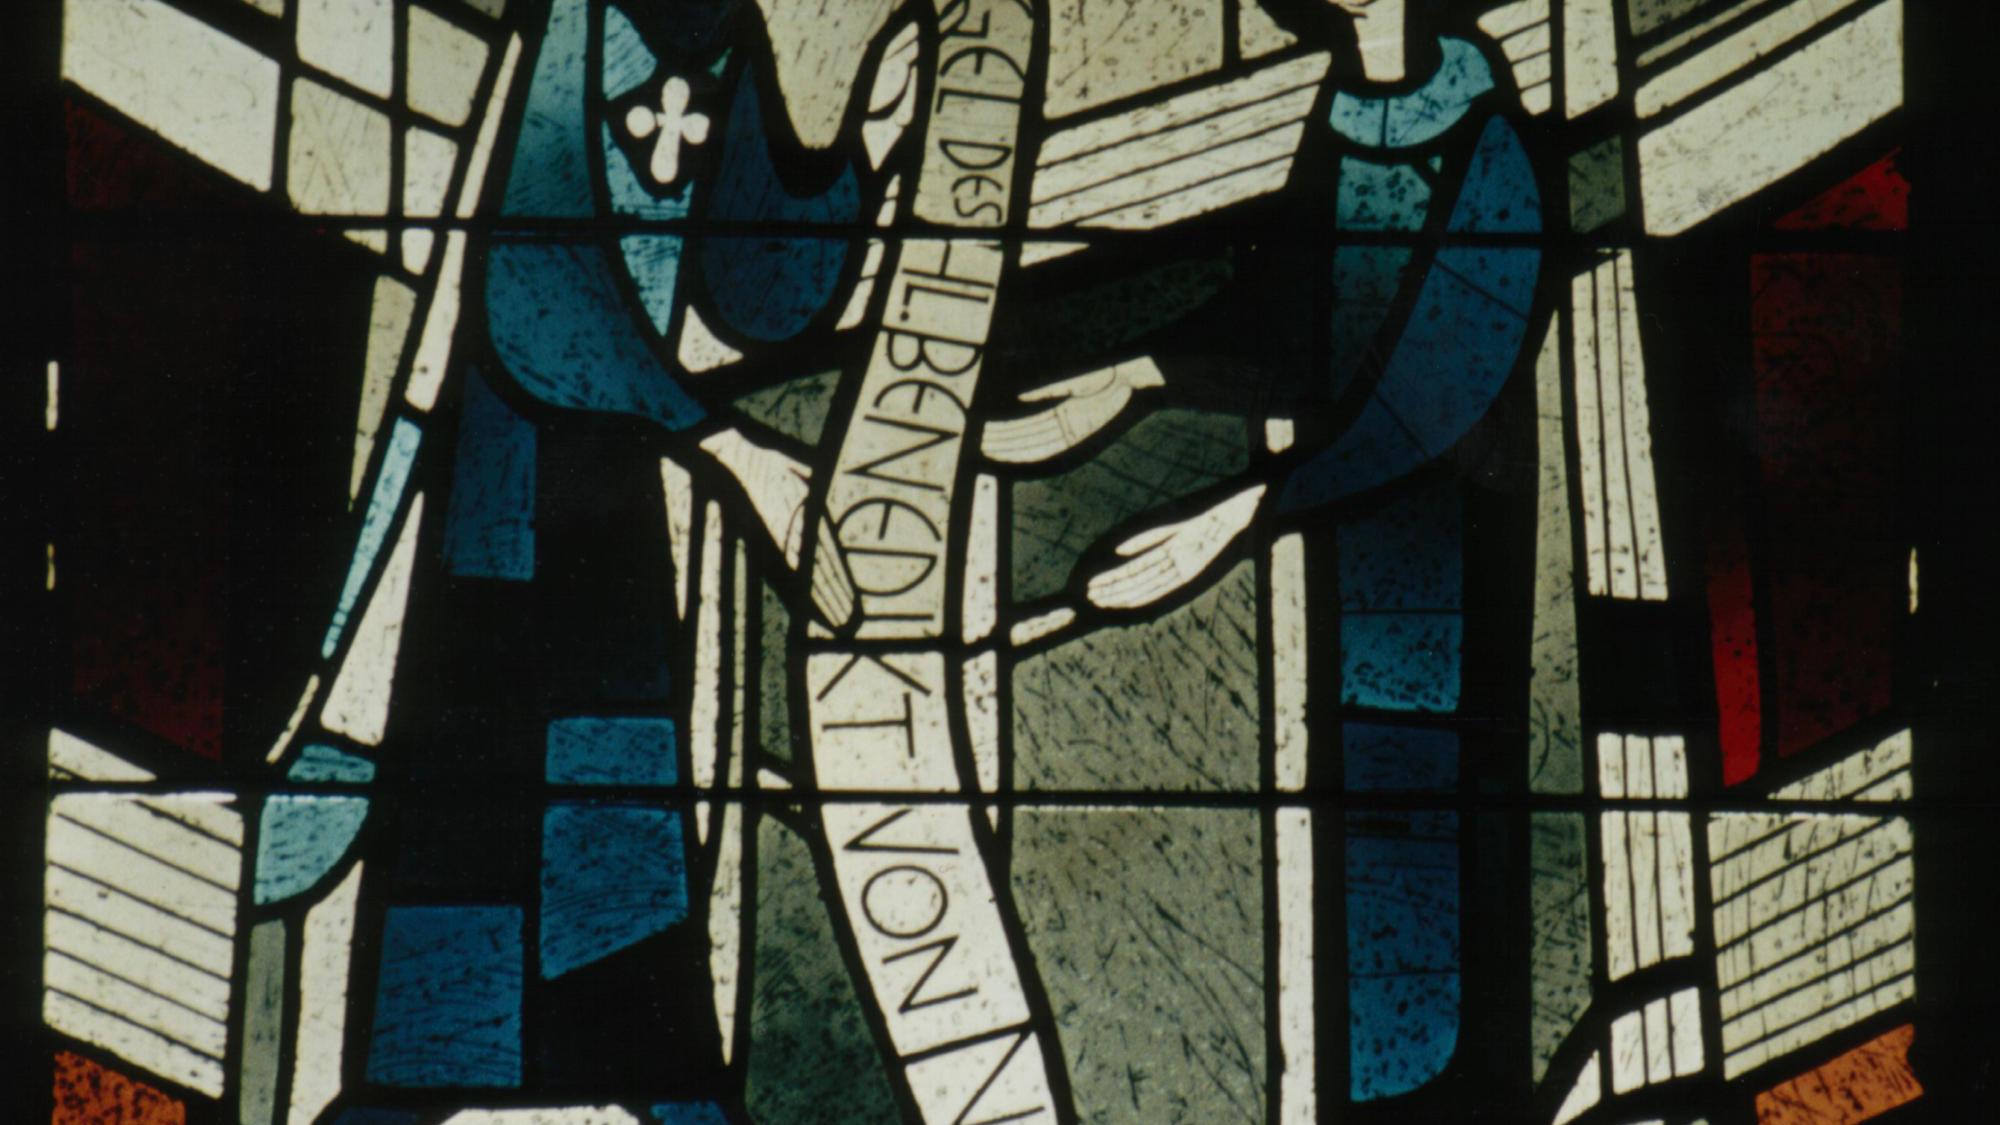 Glasfensterzyklus in der Abteikirche: Dargestellt ist hier die Übernahme der Ordensregeln durch Benedikt von Aniane. (c) P. Albert Altenähr